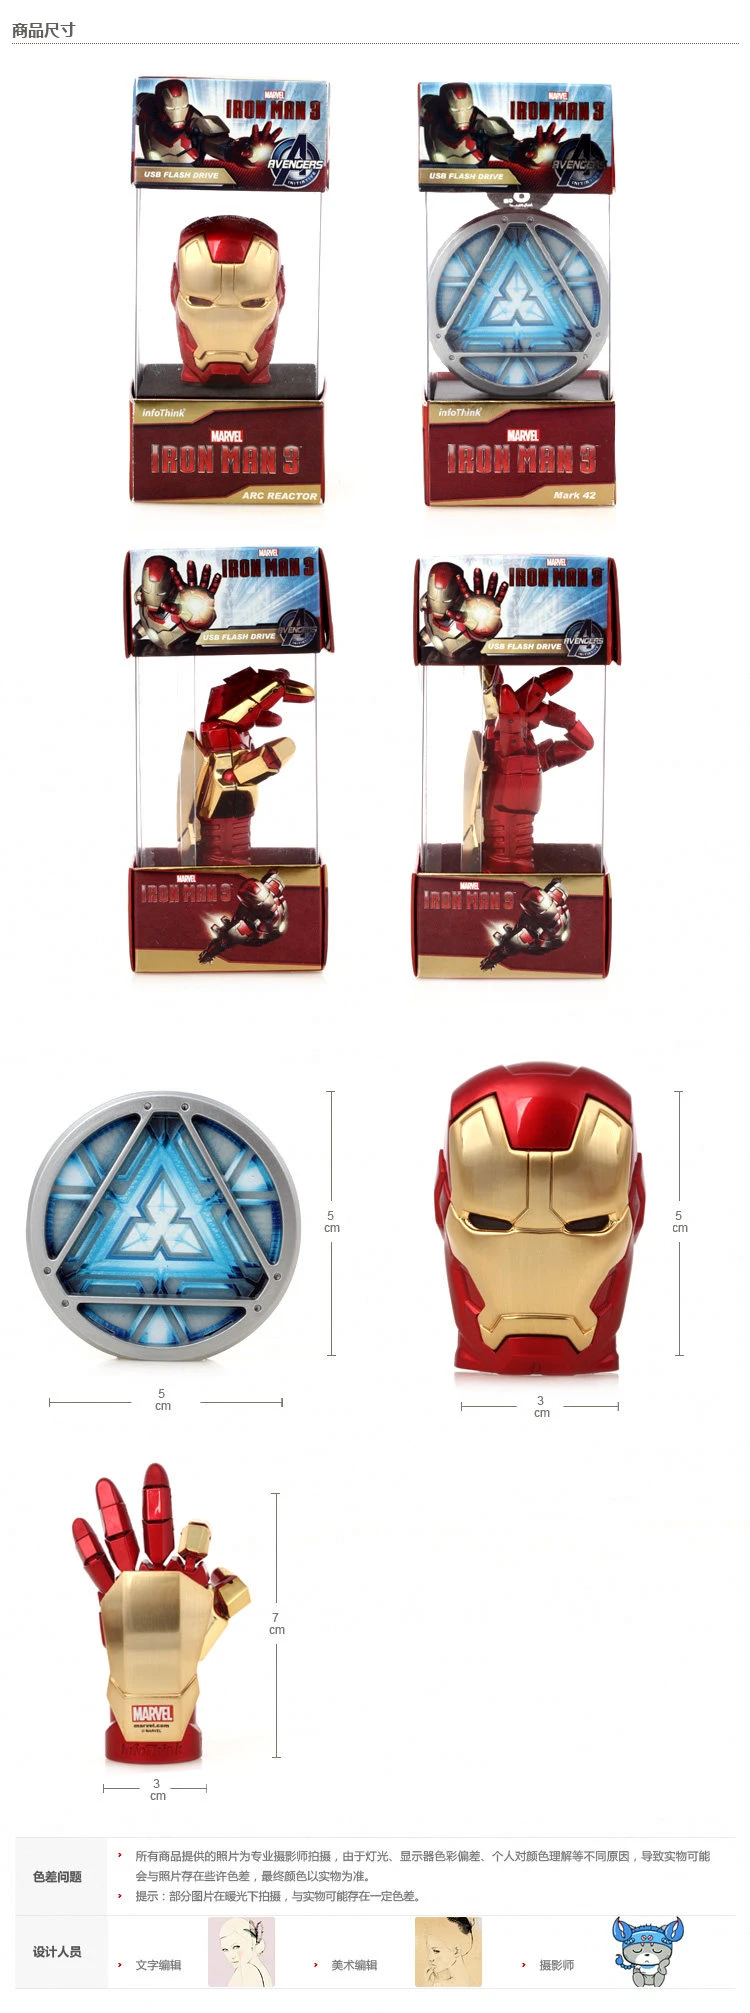 Metal Iron Man Helmet Design 2GB/4GB, /8GB/16GB/ 32GB USB Flash Drive